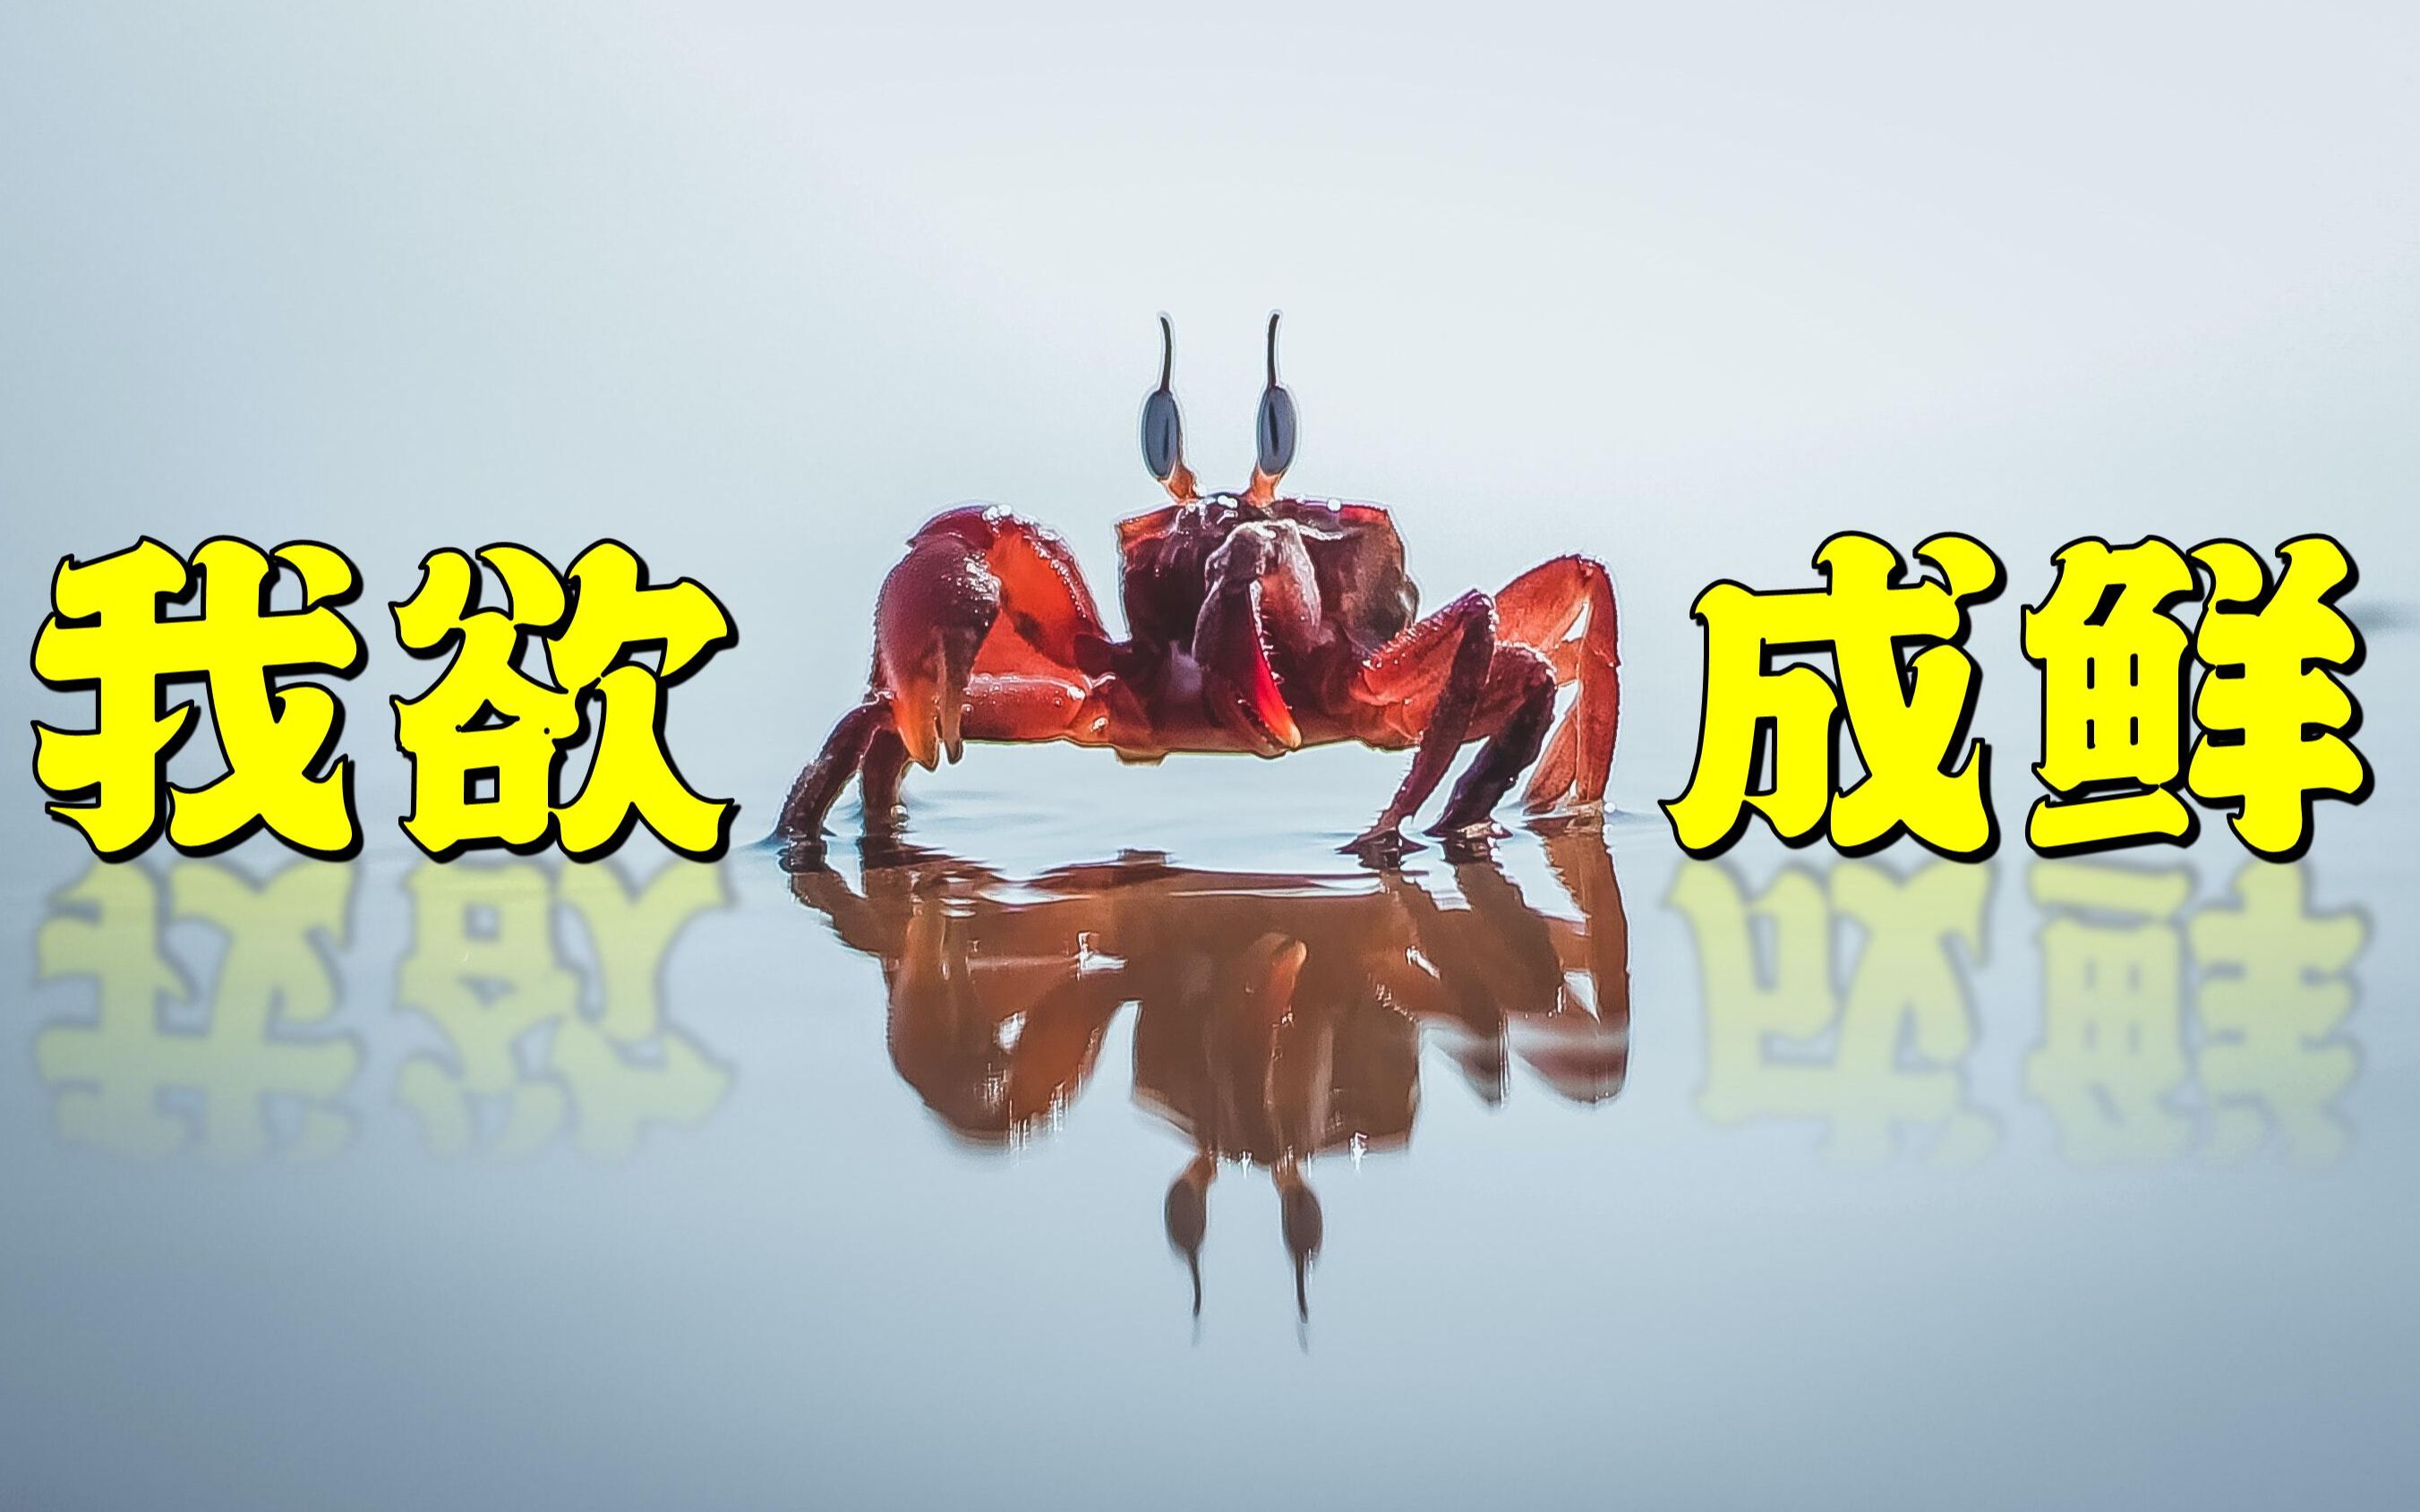 【鬼谷说】虾蟹：只要我变得足够好吃就不会被吃